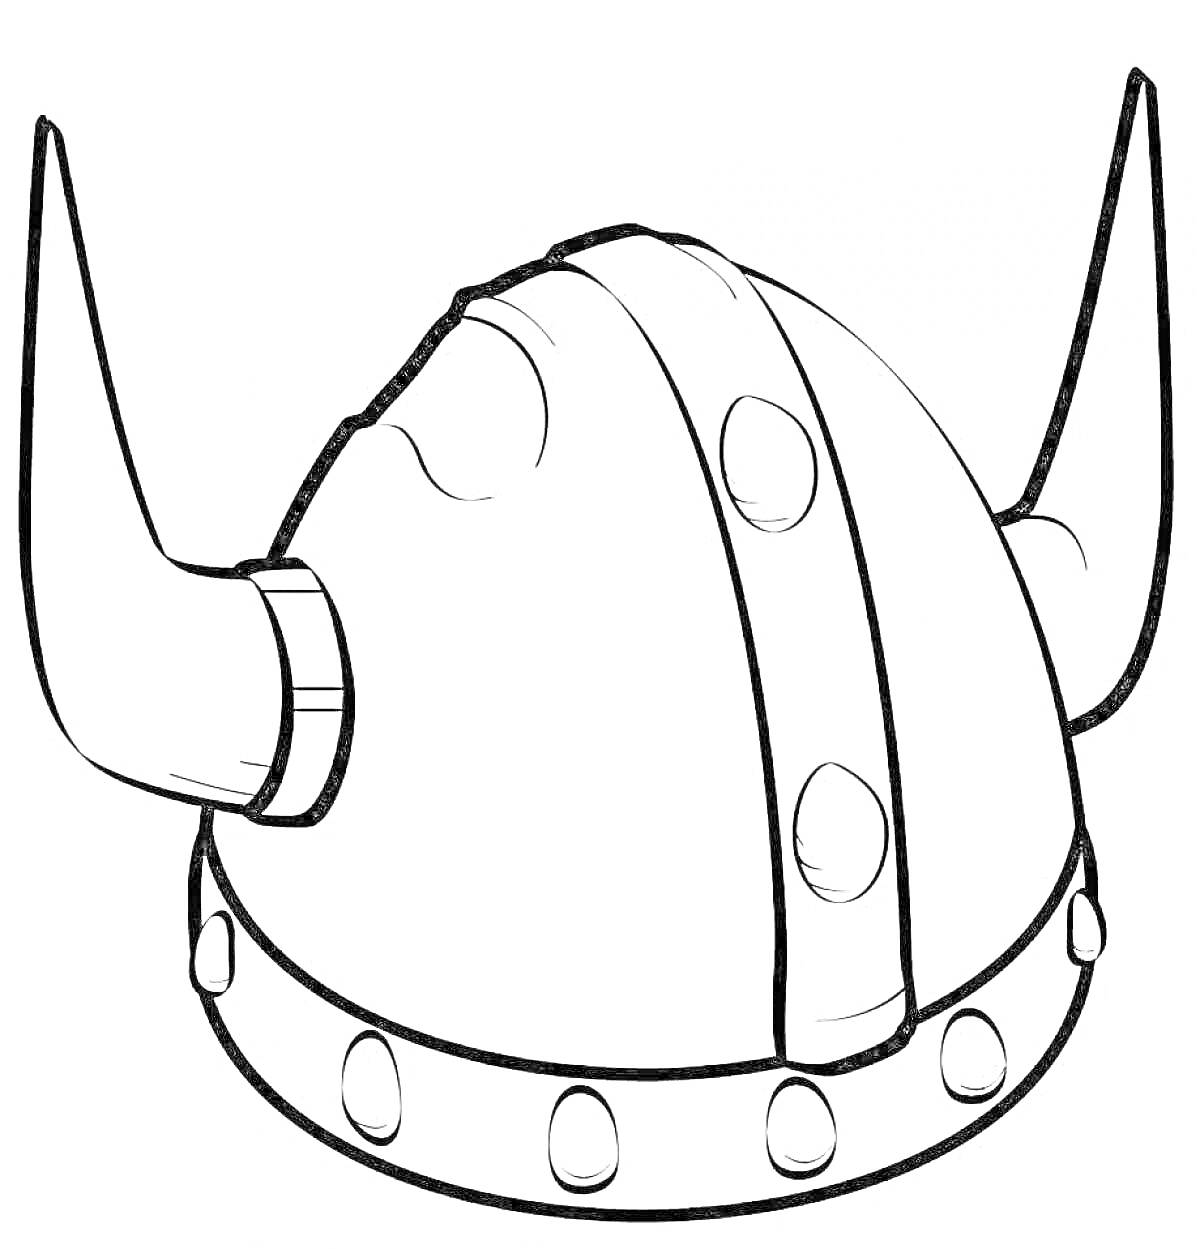 Раскраска Шлем викинга с рогами, заклепками и декоративной полосой